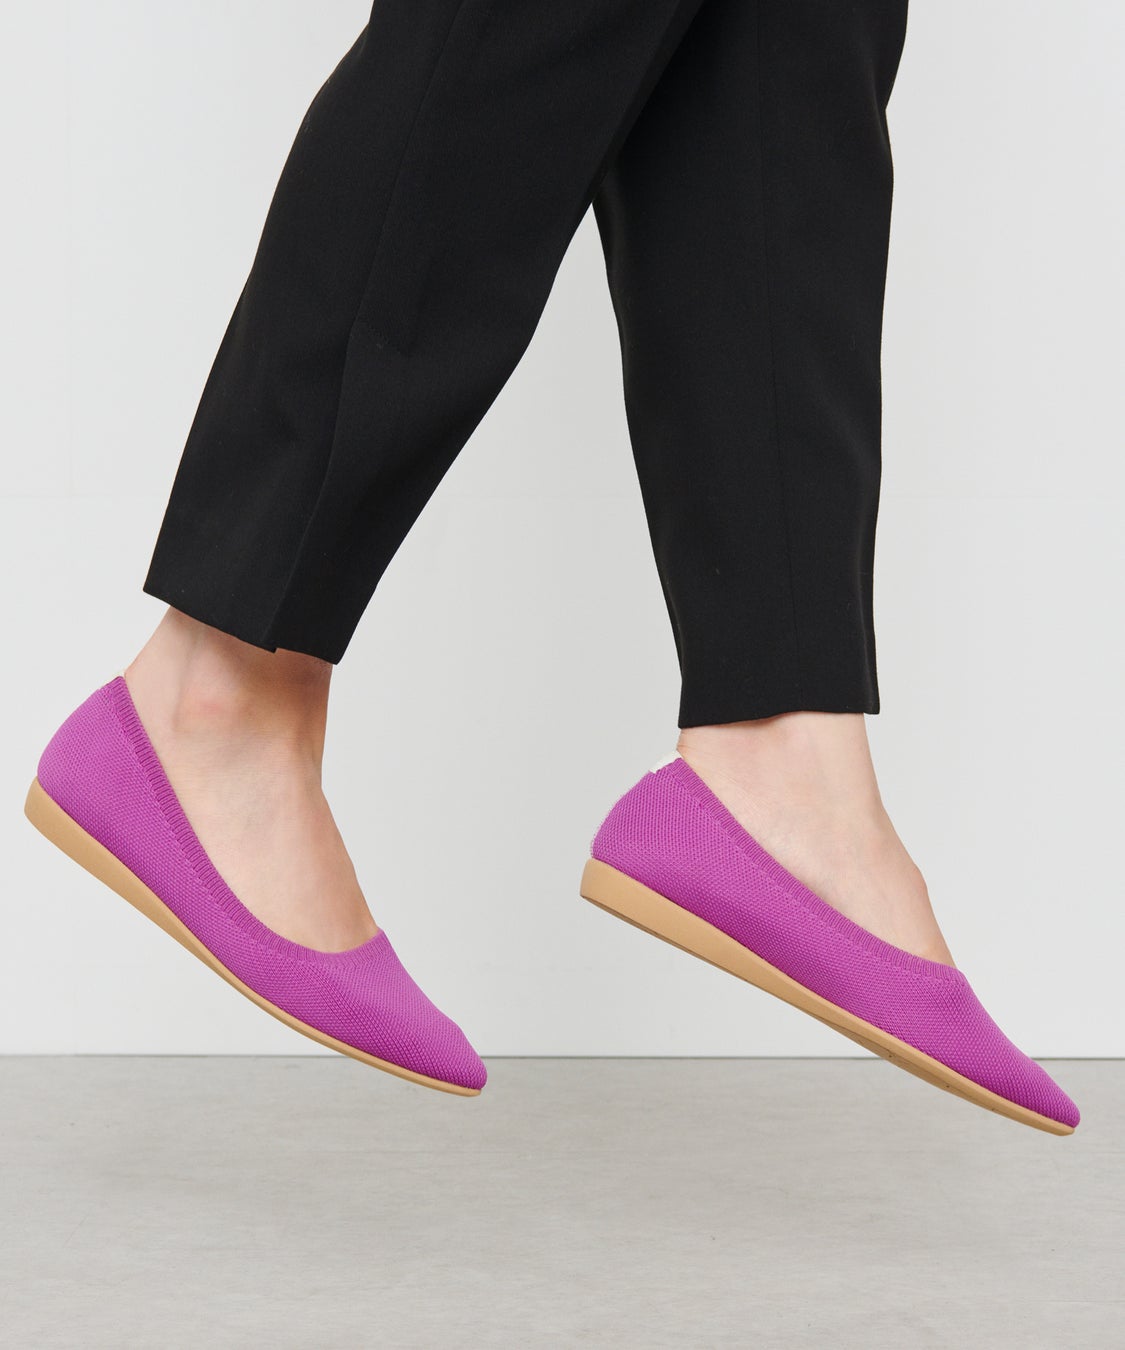 オンワード樫山の『steppi by UNFILO』が2022年度「グッドデザイン賞」受賞女性の足の悩みに機能美で寄り添うニットパンプス、“私の選ぶ一品”にも選出のサブ画像2